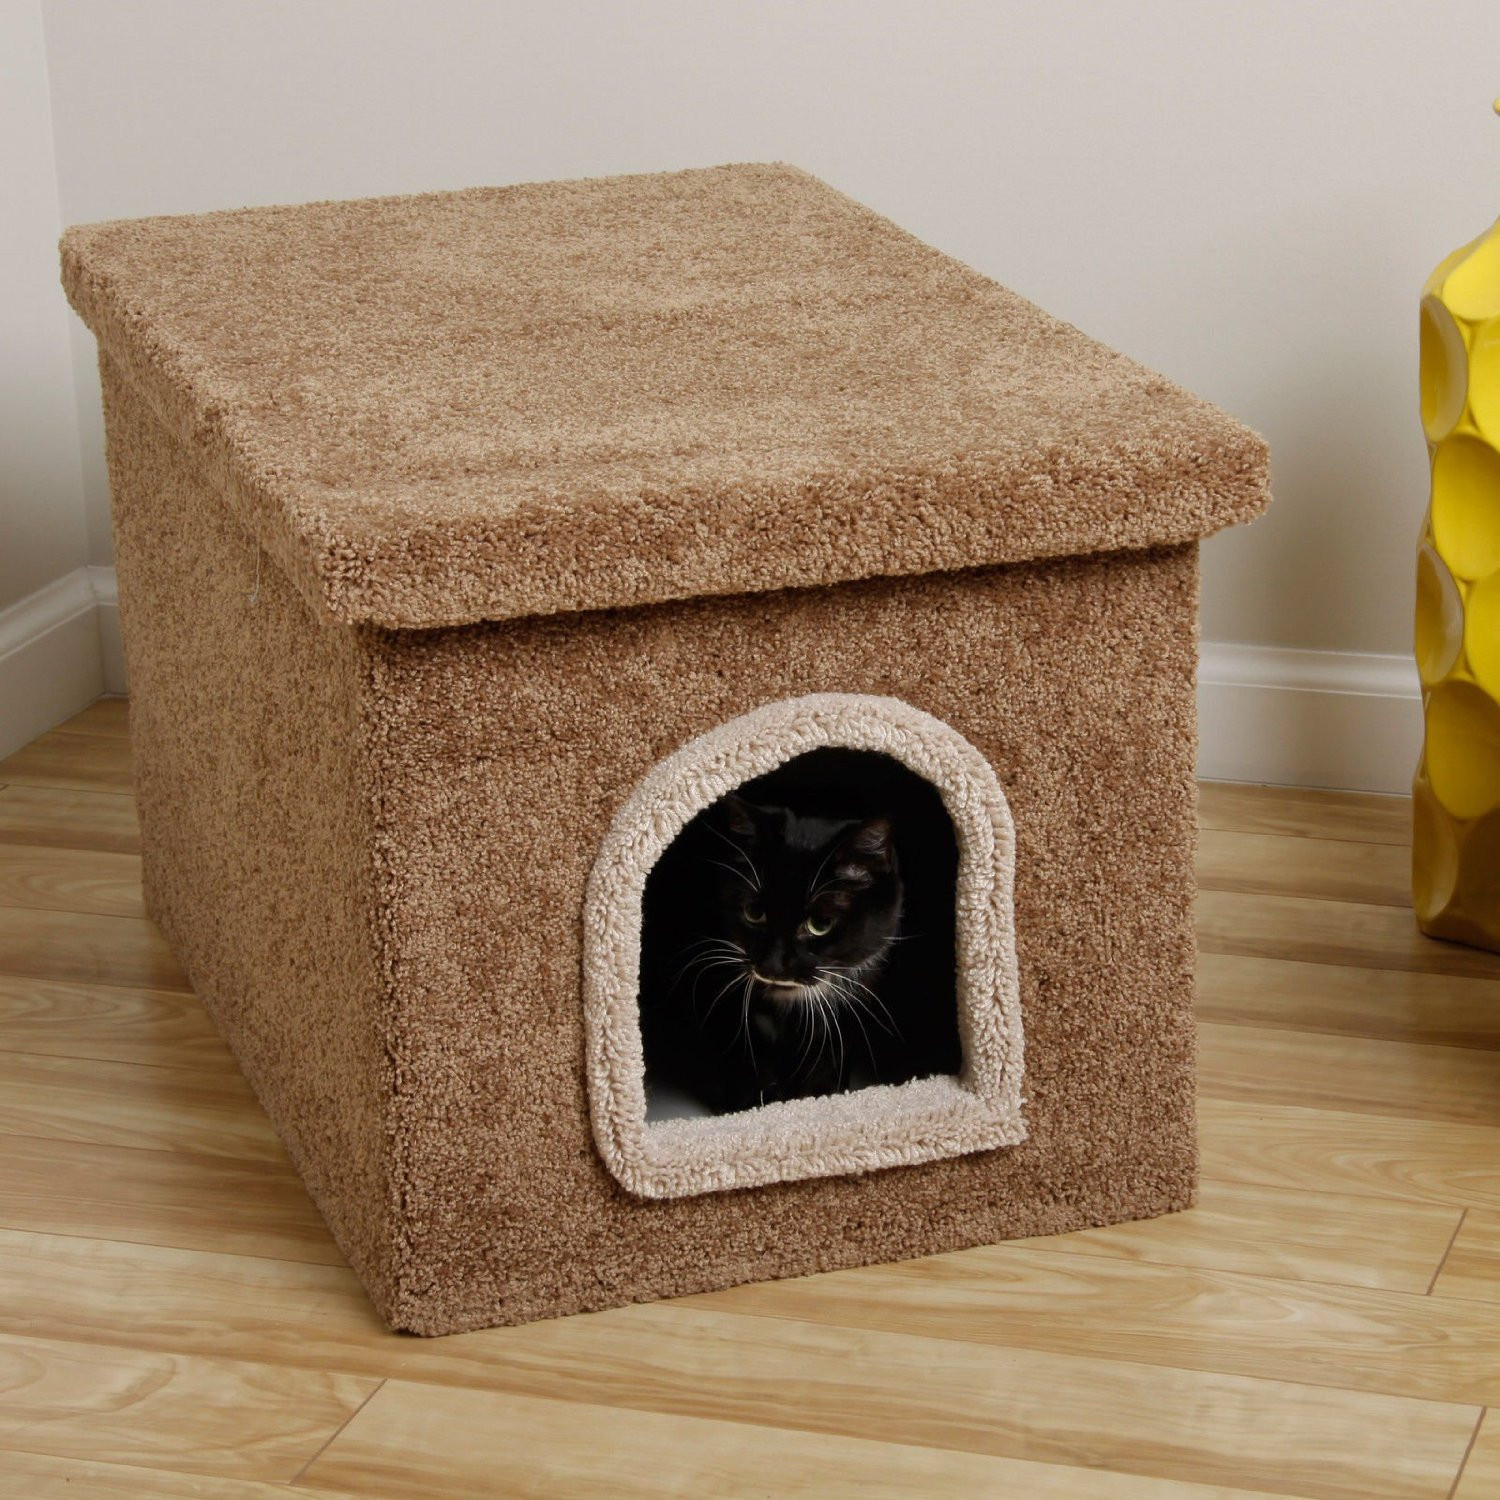 DIY Cat Litter Box
 An Easy DIY Cat Litter Box Ideas – HomesFeed